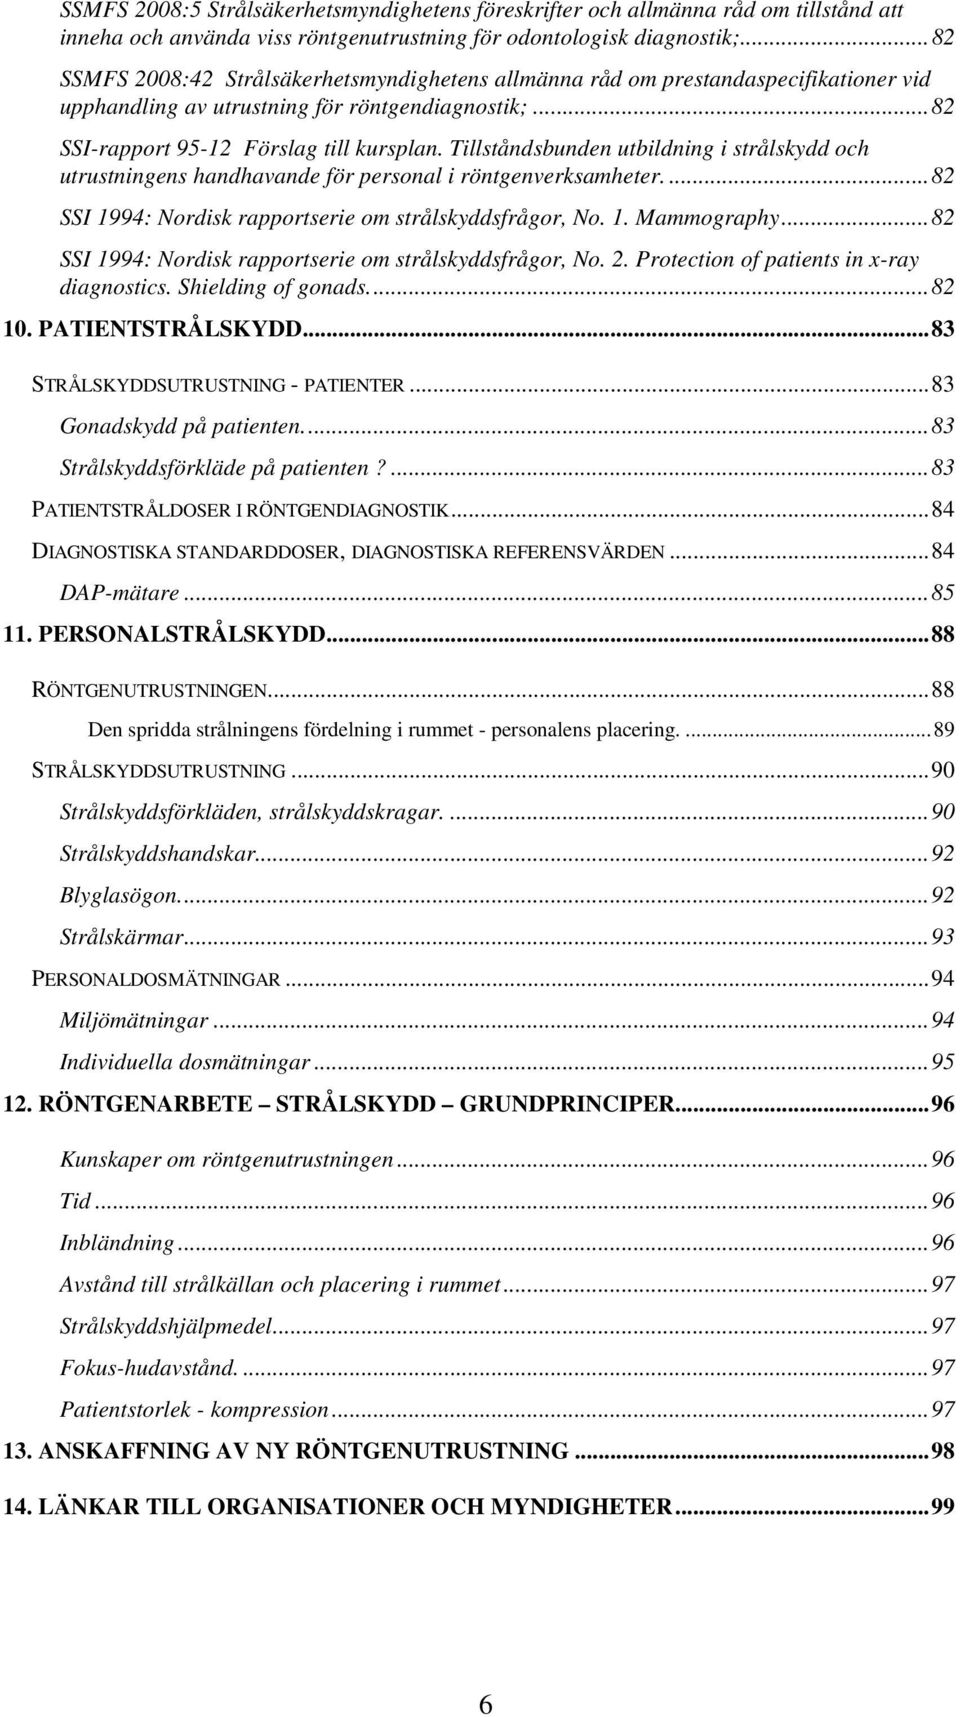 Tillståndsbunden utbildning i strålskydd och utrustningens handhavande för personal i röntgenverksamheter....82 SSI 1994: Nordisk rapportserie om strålskyddsfrågor, No. 1. Mammography.